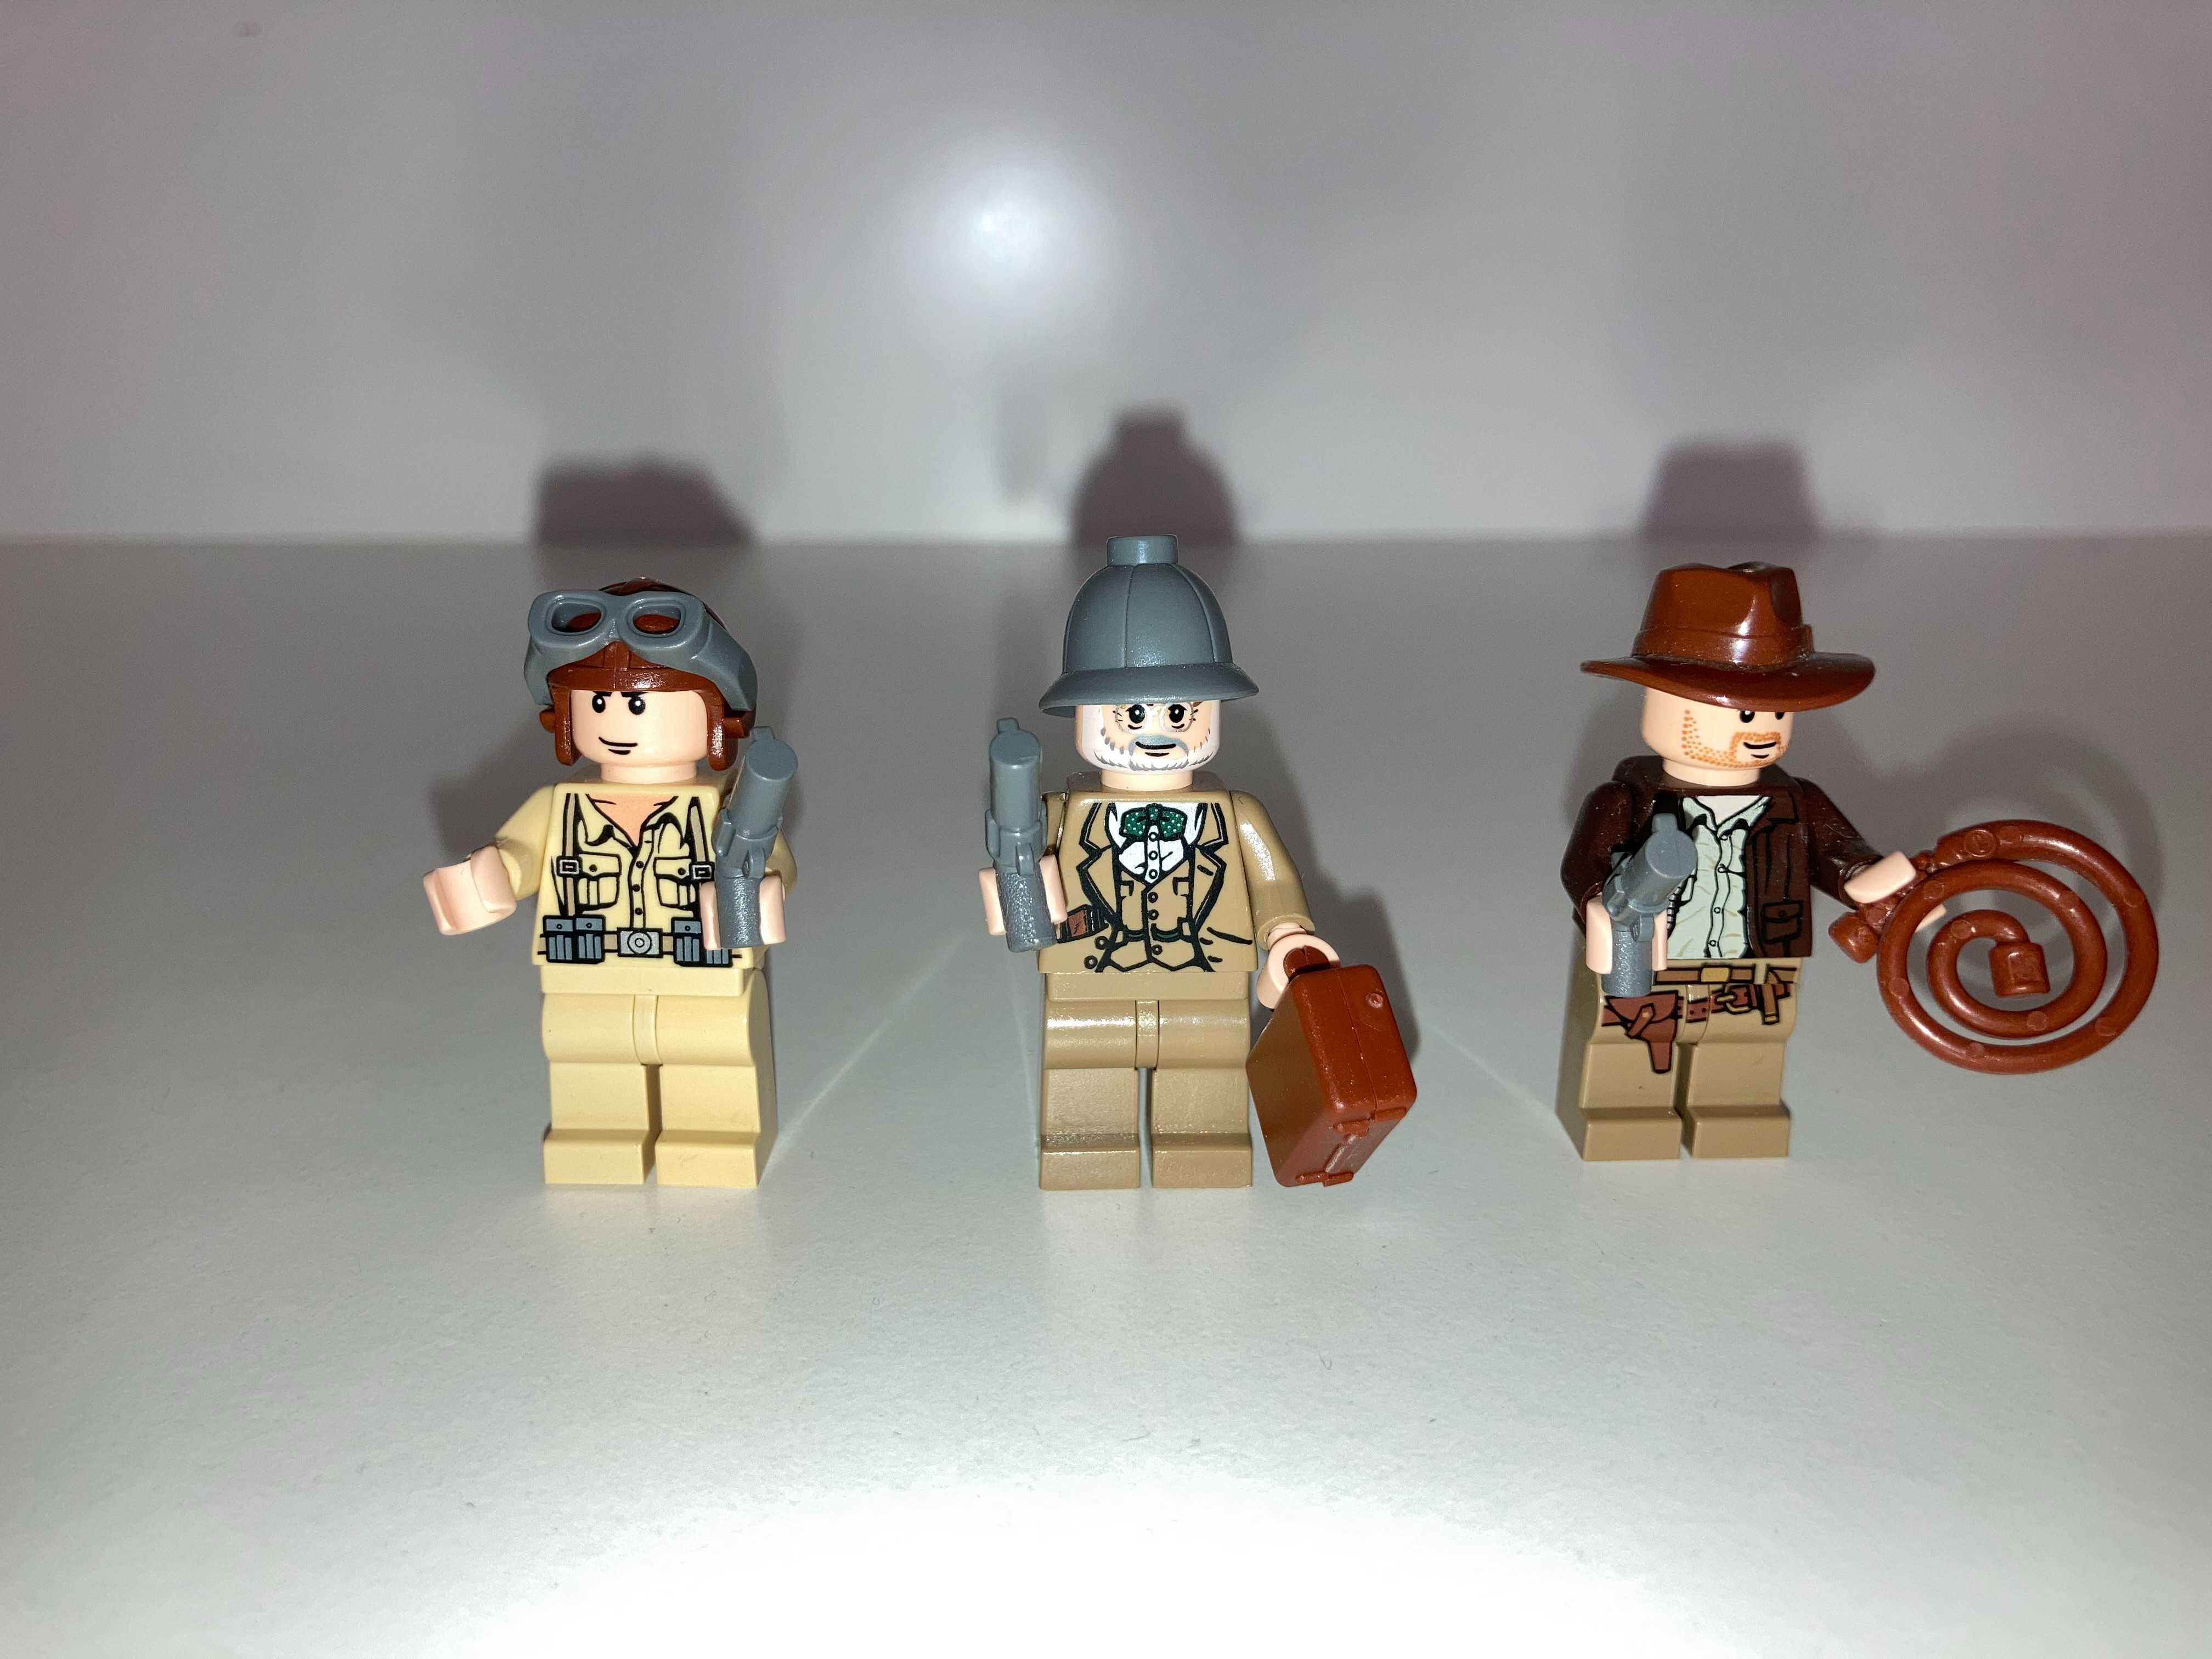 Lego Indiana Jones zestaw 7198 Bitwa samolotów